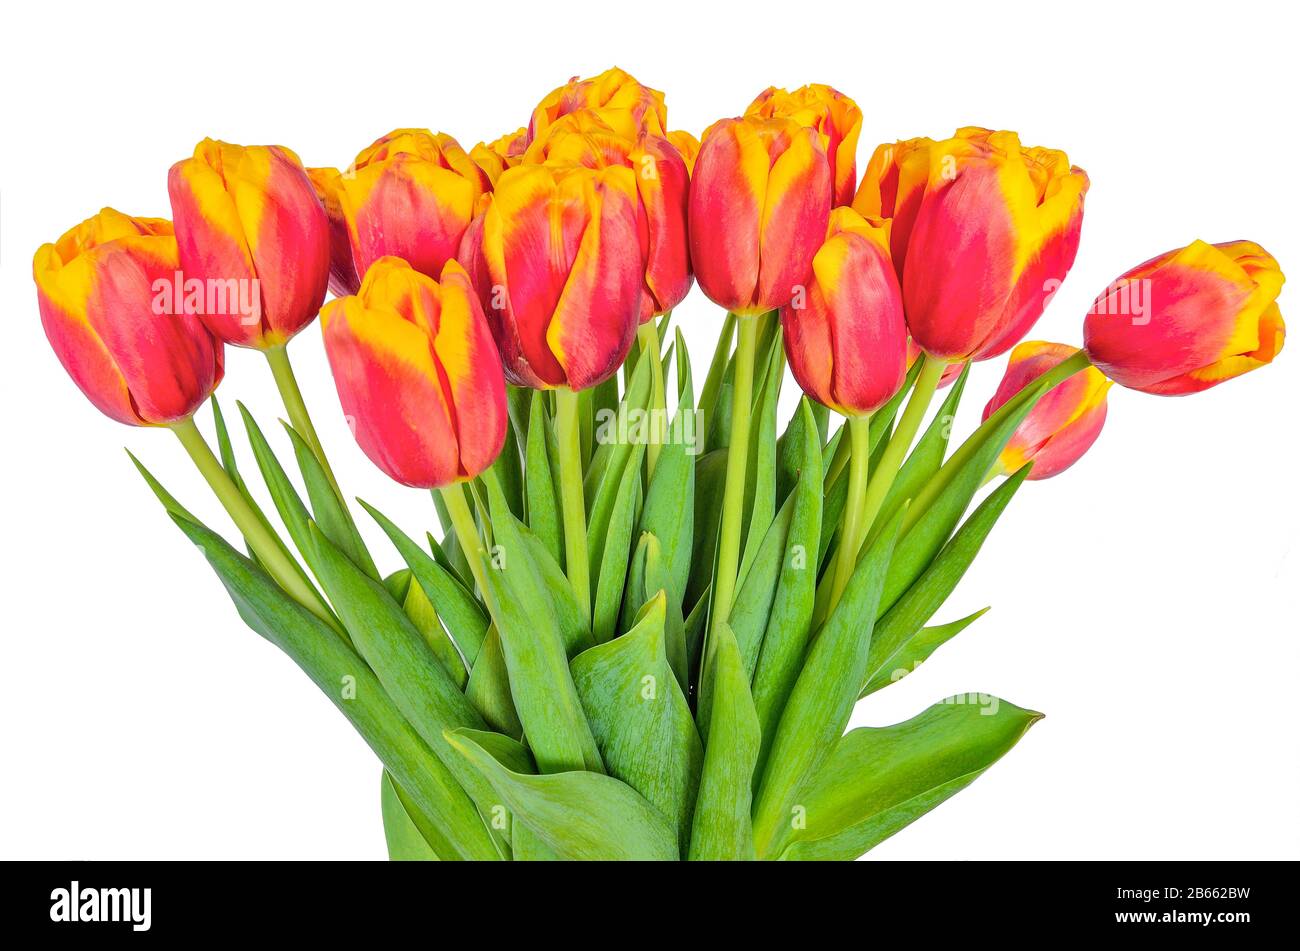 Fresco bouquet primaverile di rosso con tulipani gialli su sfondo bianco isolato. Fiori rossi luminosi con bordi gialli di petali. Fiore primavera fiore Foto Stock